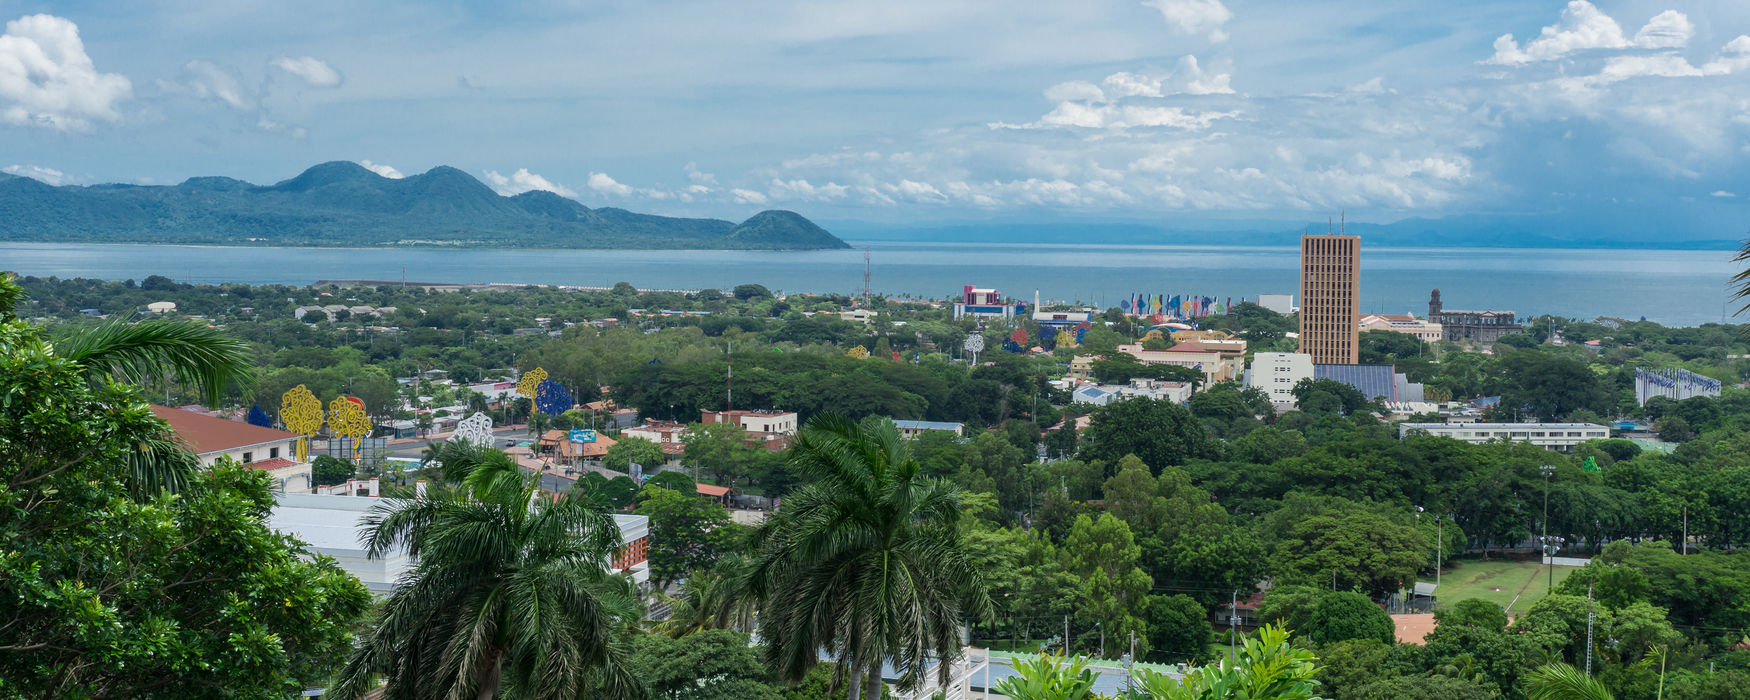 Vista panorámica de Managua. Foto: Kayak.com